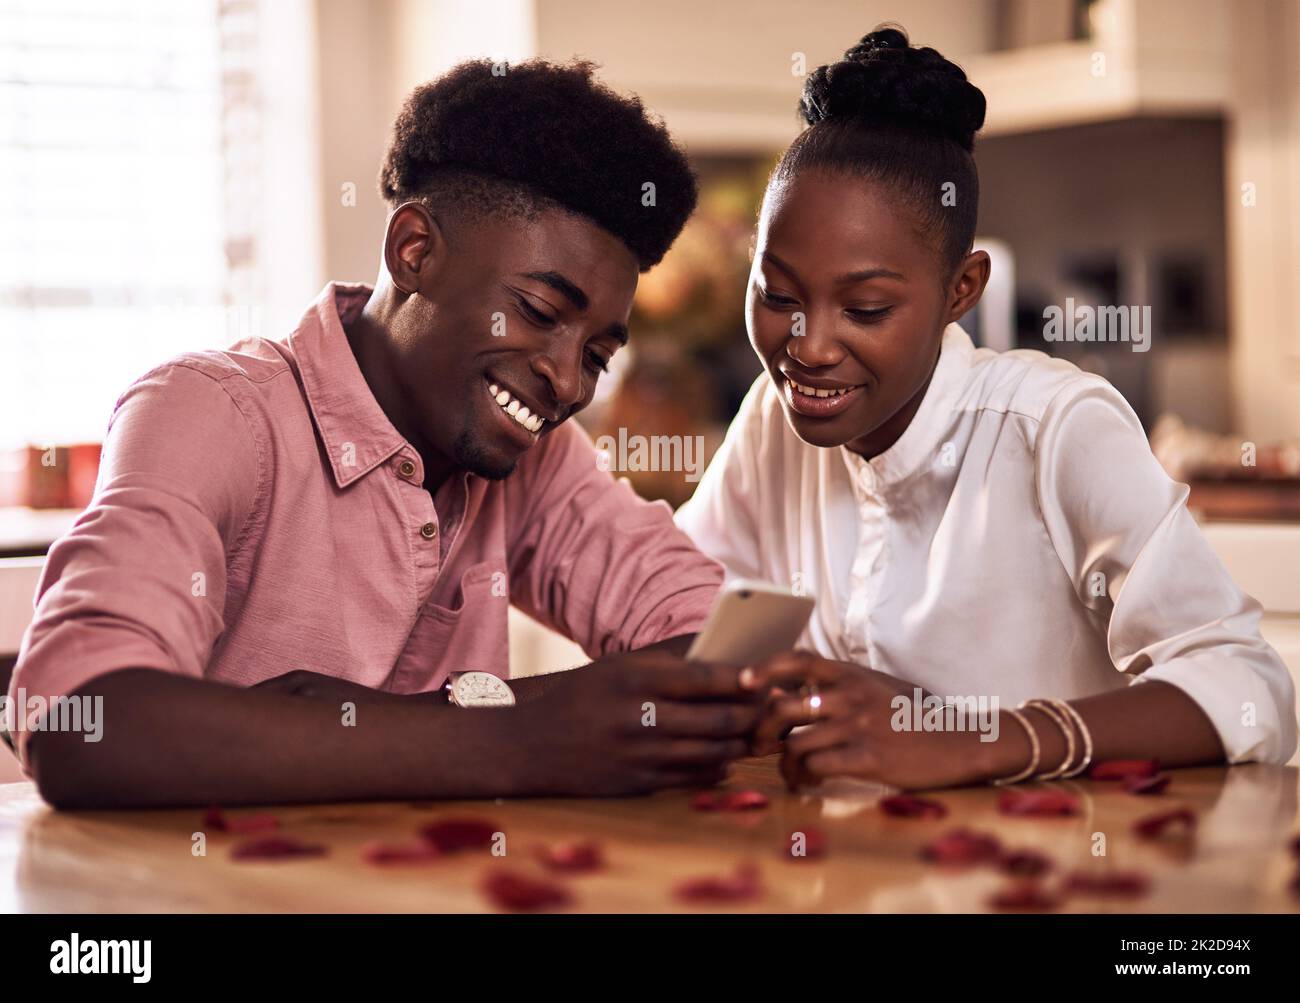 Beiträge zum Valentinstag sind bereits im Trend. Eine kurze Aufnahme eines anhänglichen jungen Paares, das ein Smartphone zusammen in seiner Küche zu Hause benutzt. Stockfoto